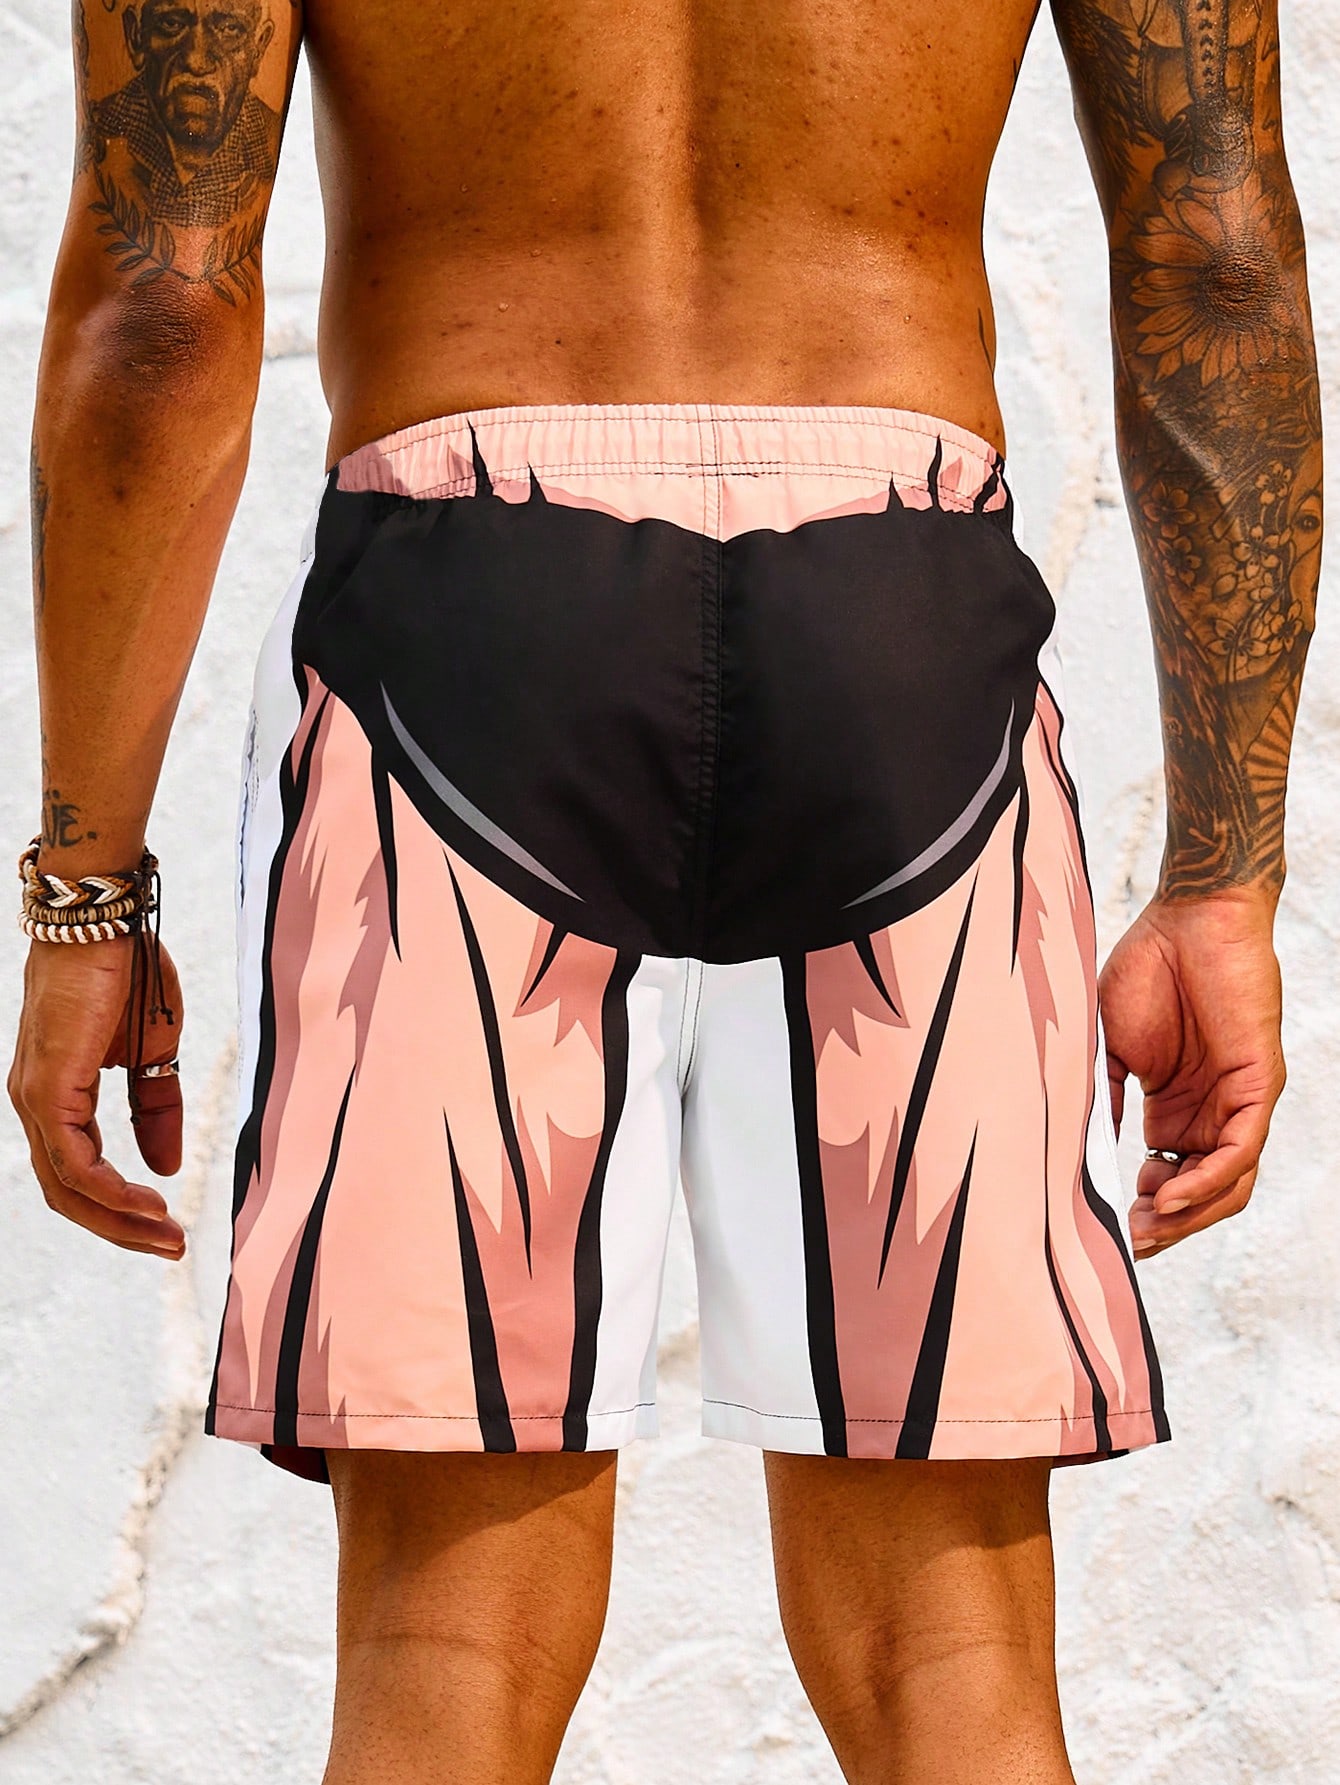 Мужские пляжные шорты с завязками на талии и принтом, абрикос